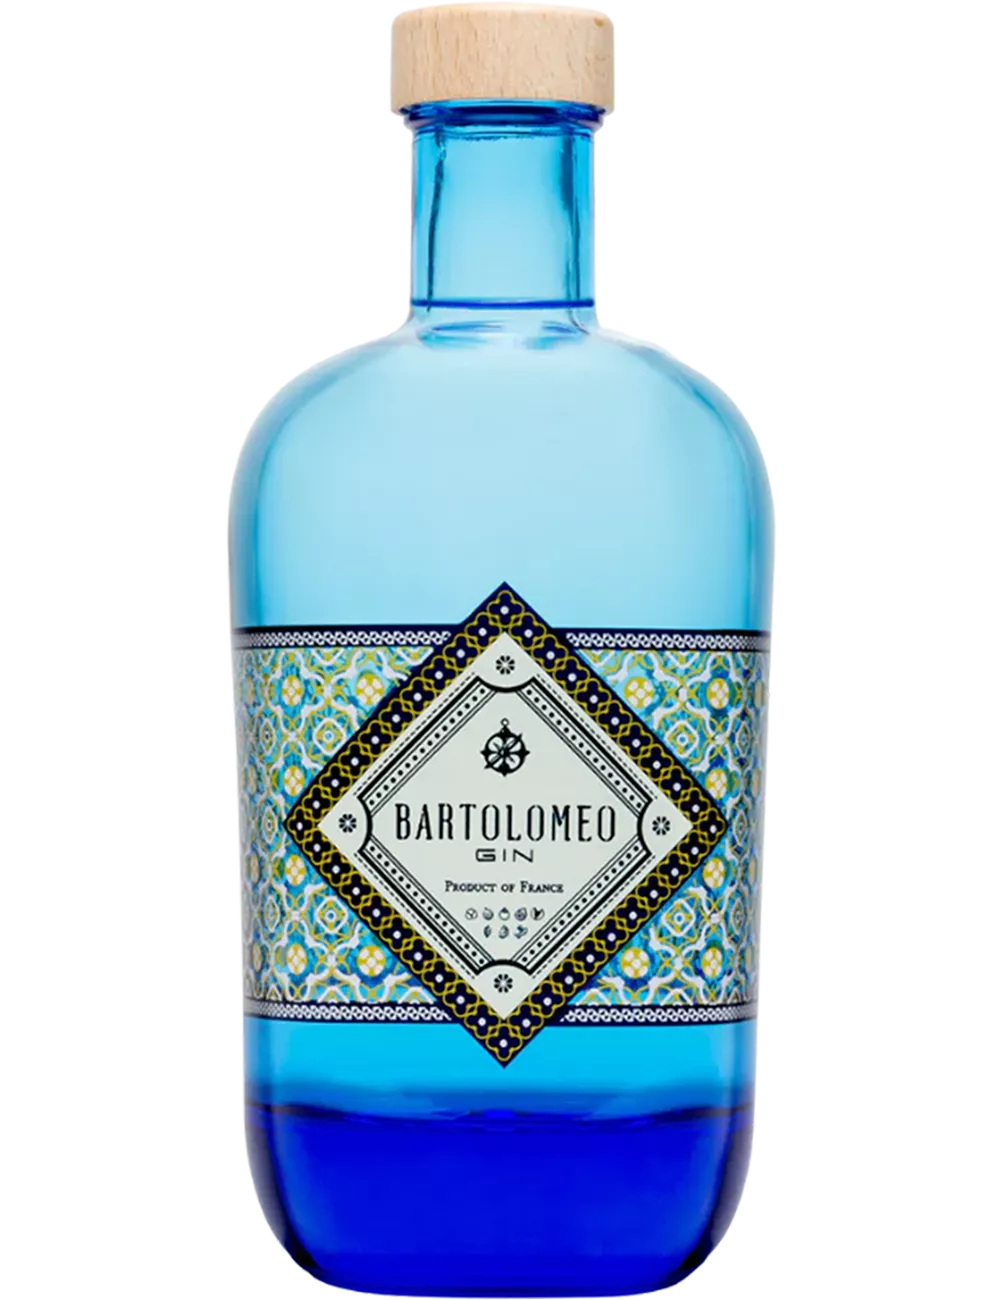 Bartolomeo - Distilled gin